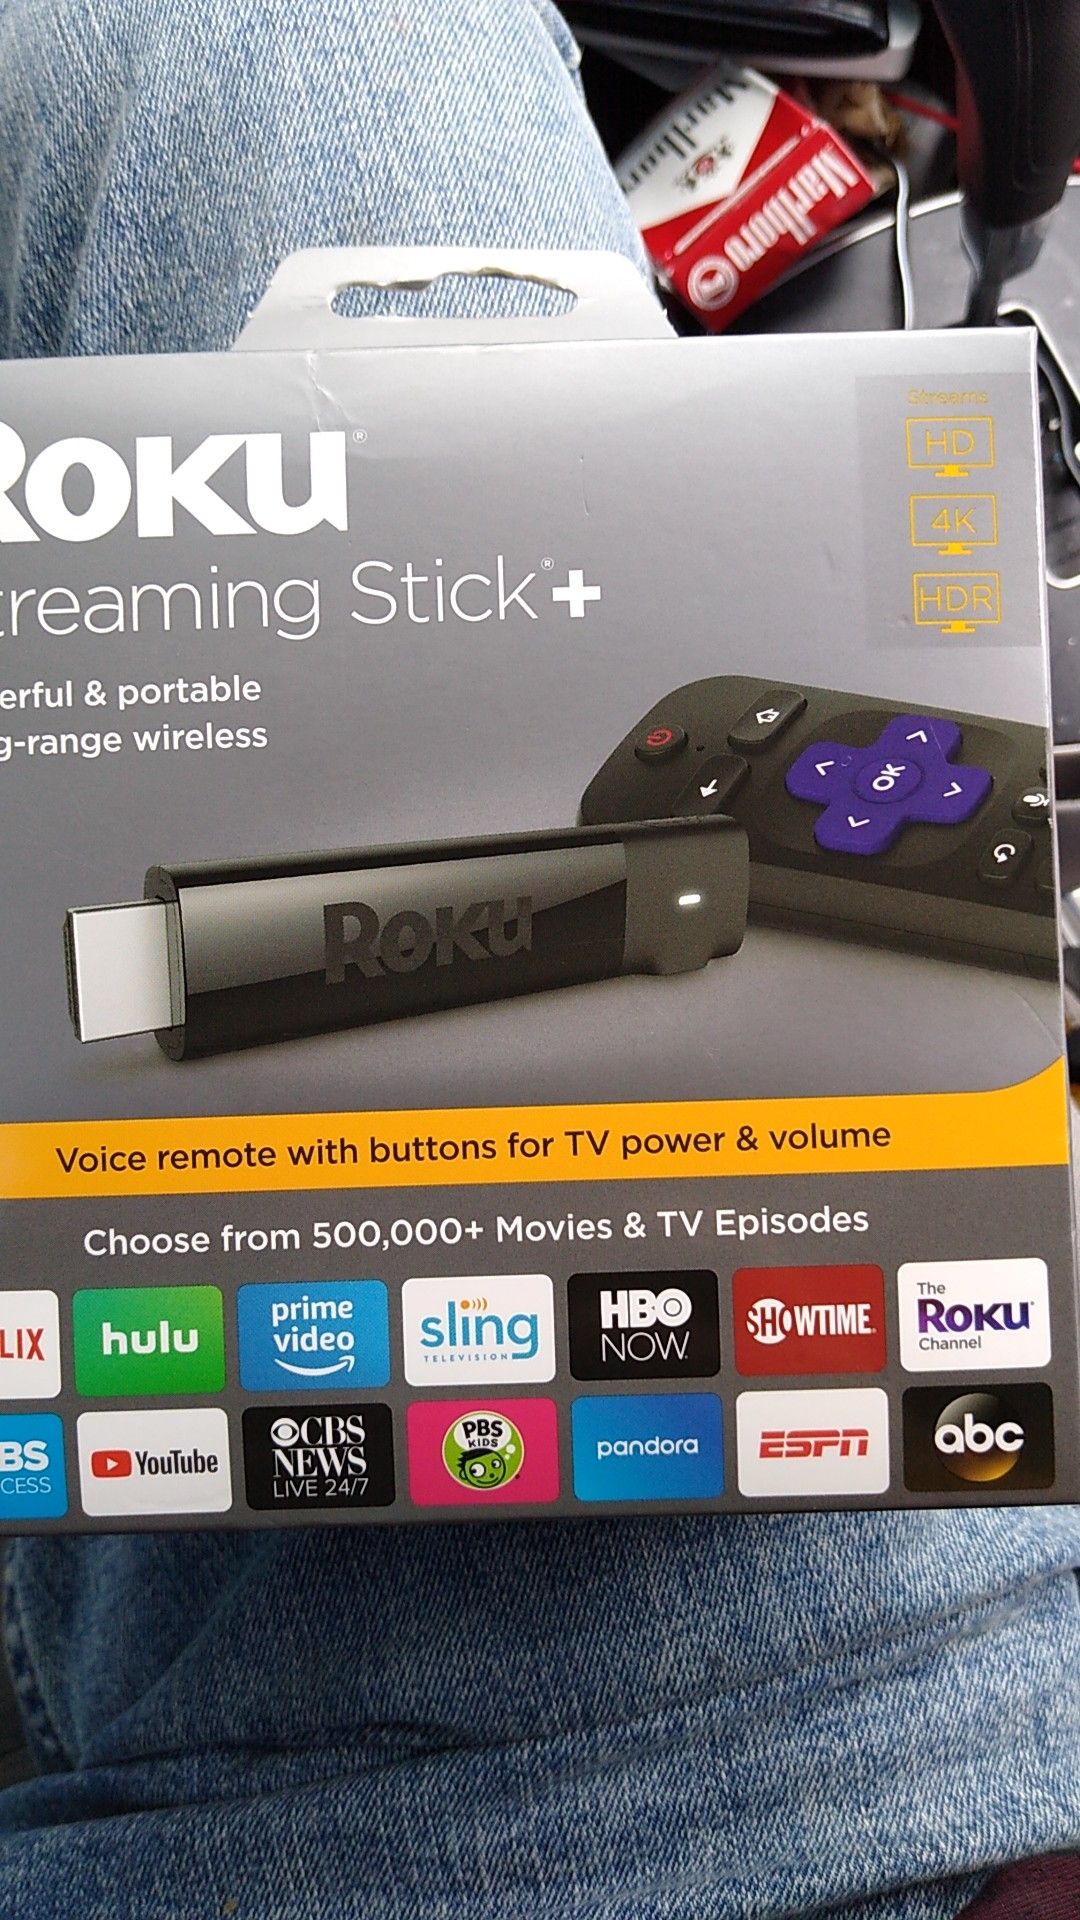 Roku Streaming stick Plus